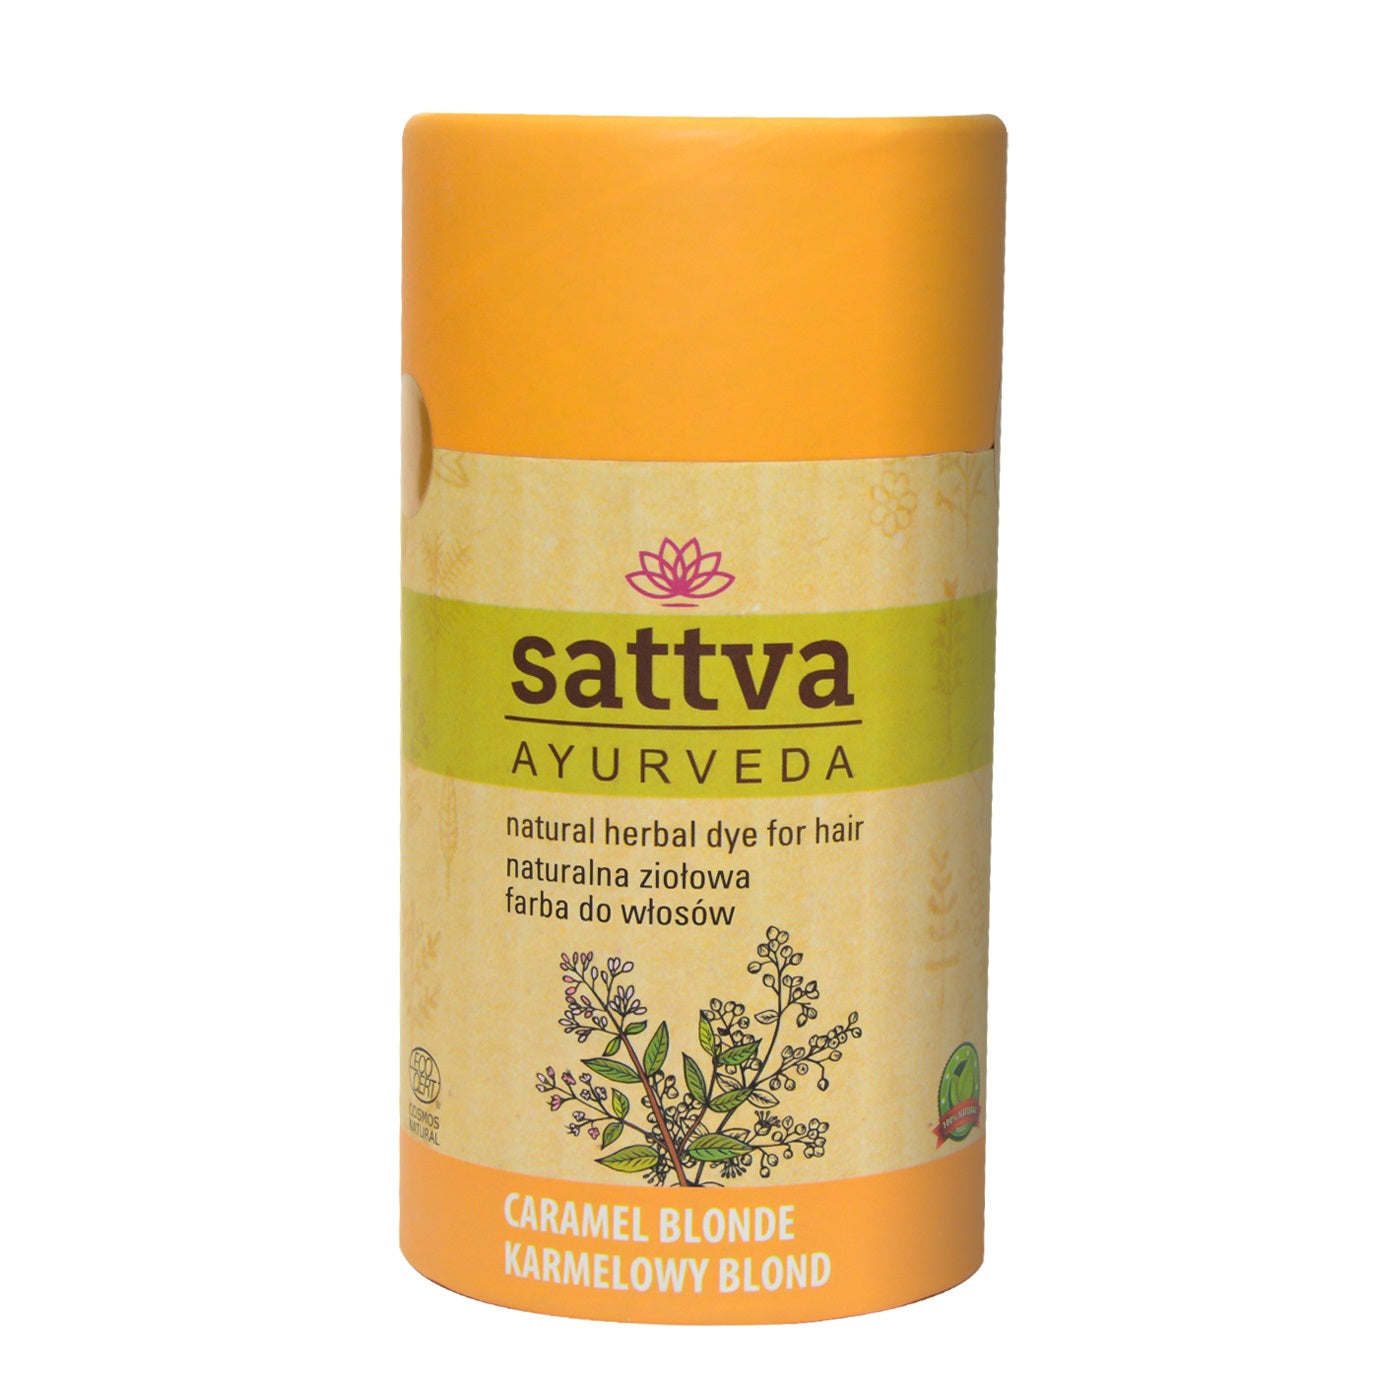 Sattva Краска для волос Natural Herbal Dye for Hair натуральная травяная краска для волос Карамельный блонд 150г краска для волос sattva ayurveda 150 гр